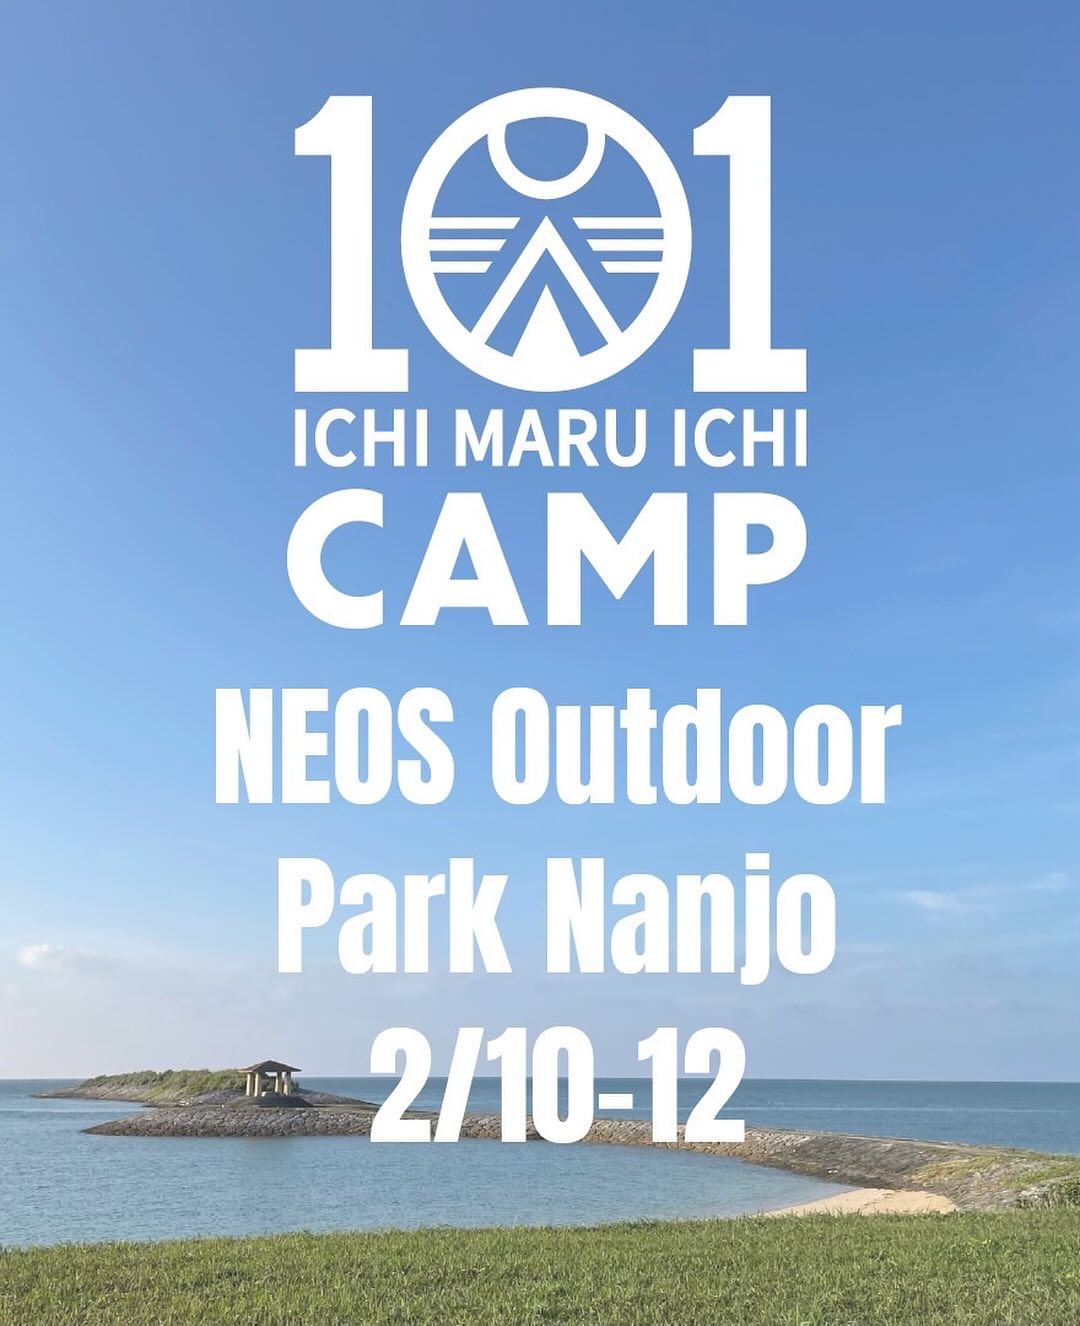 沖縄キャンプイベント101campフェスのフライヤー画像。